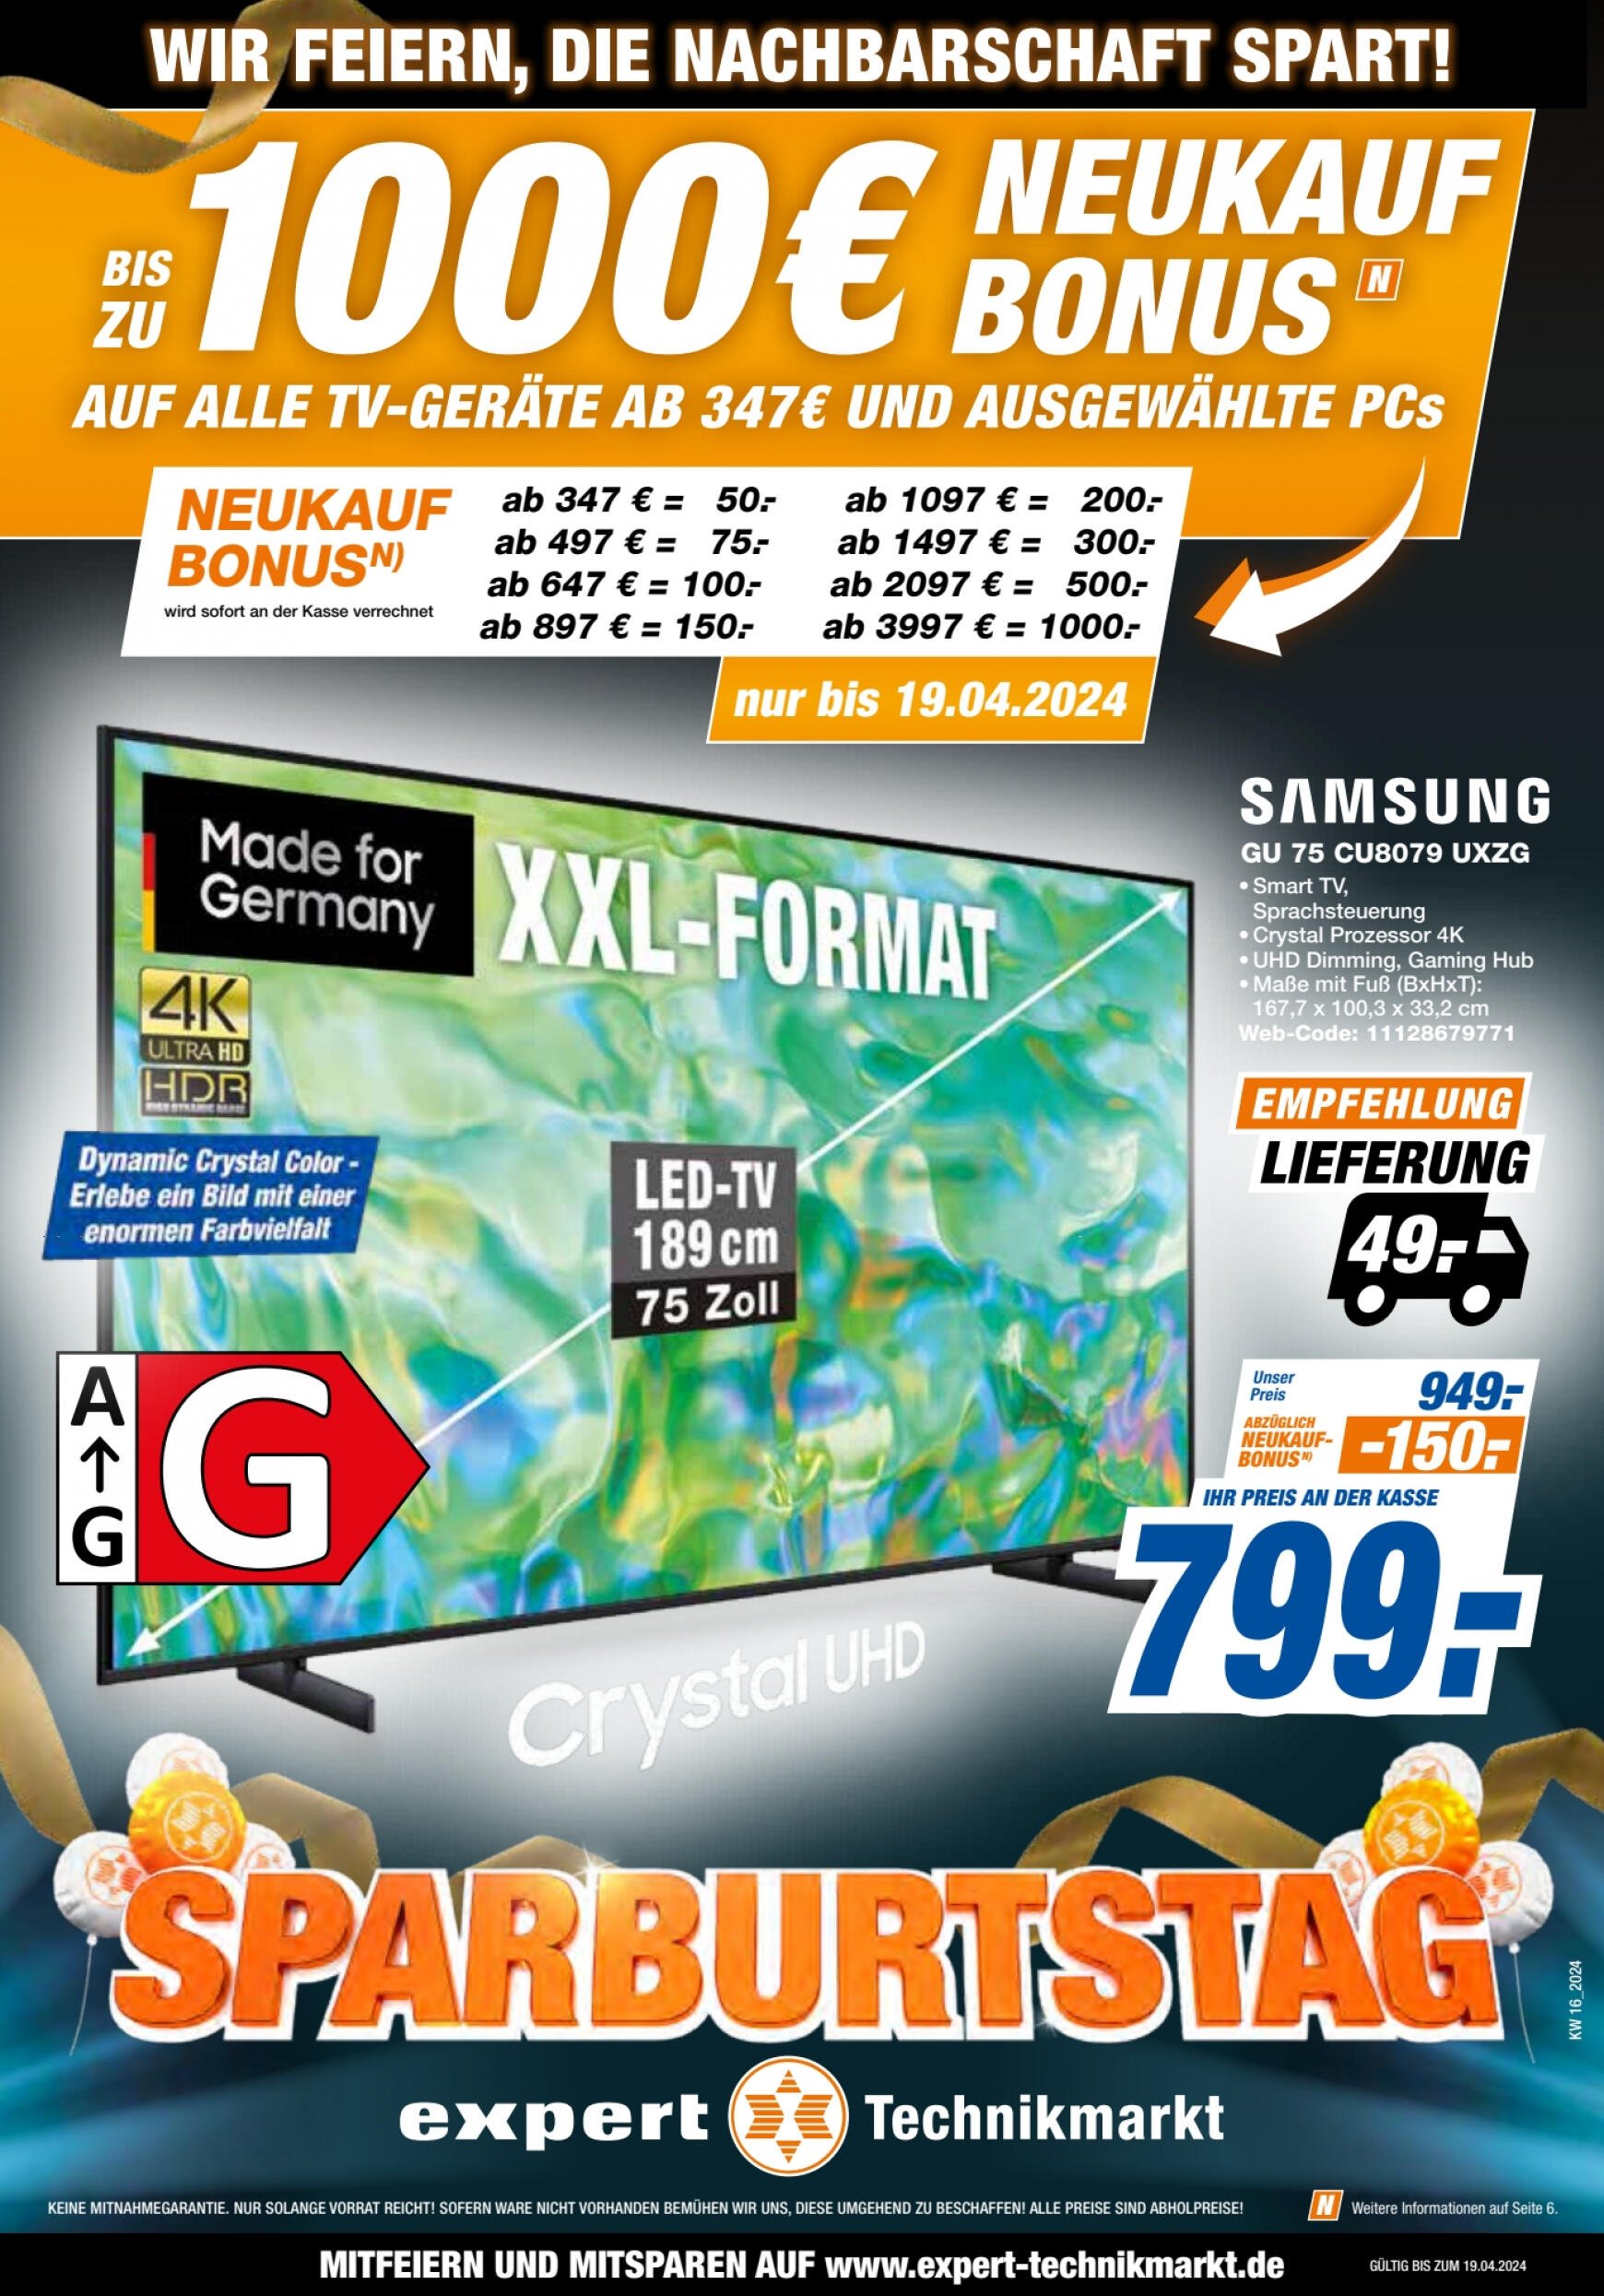 expert - Flyer expert aktuell 19.04. - 31.05. - page: 1